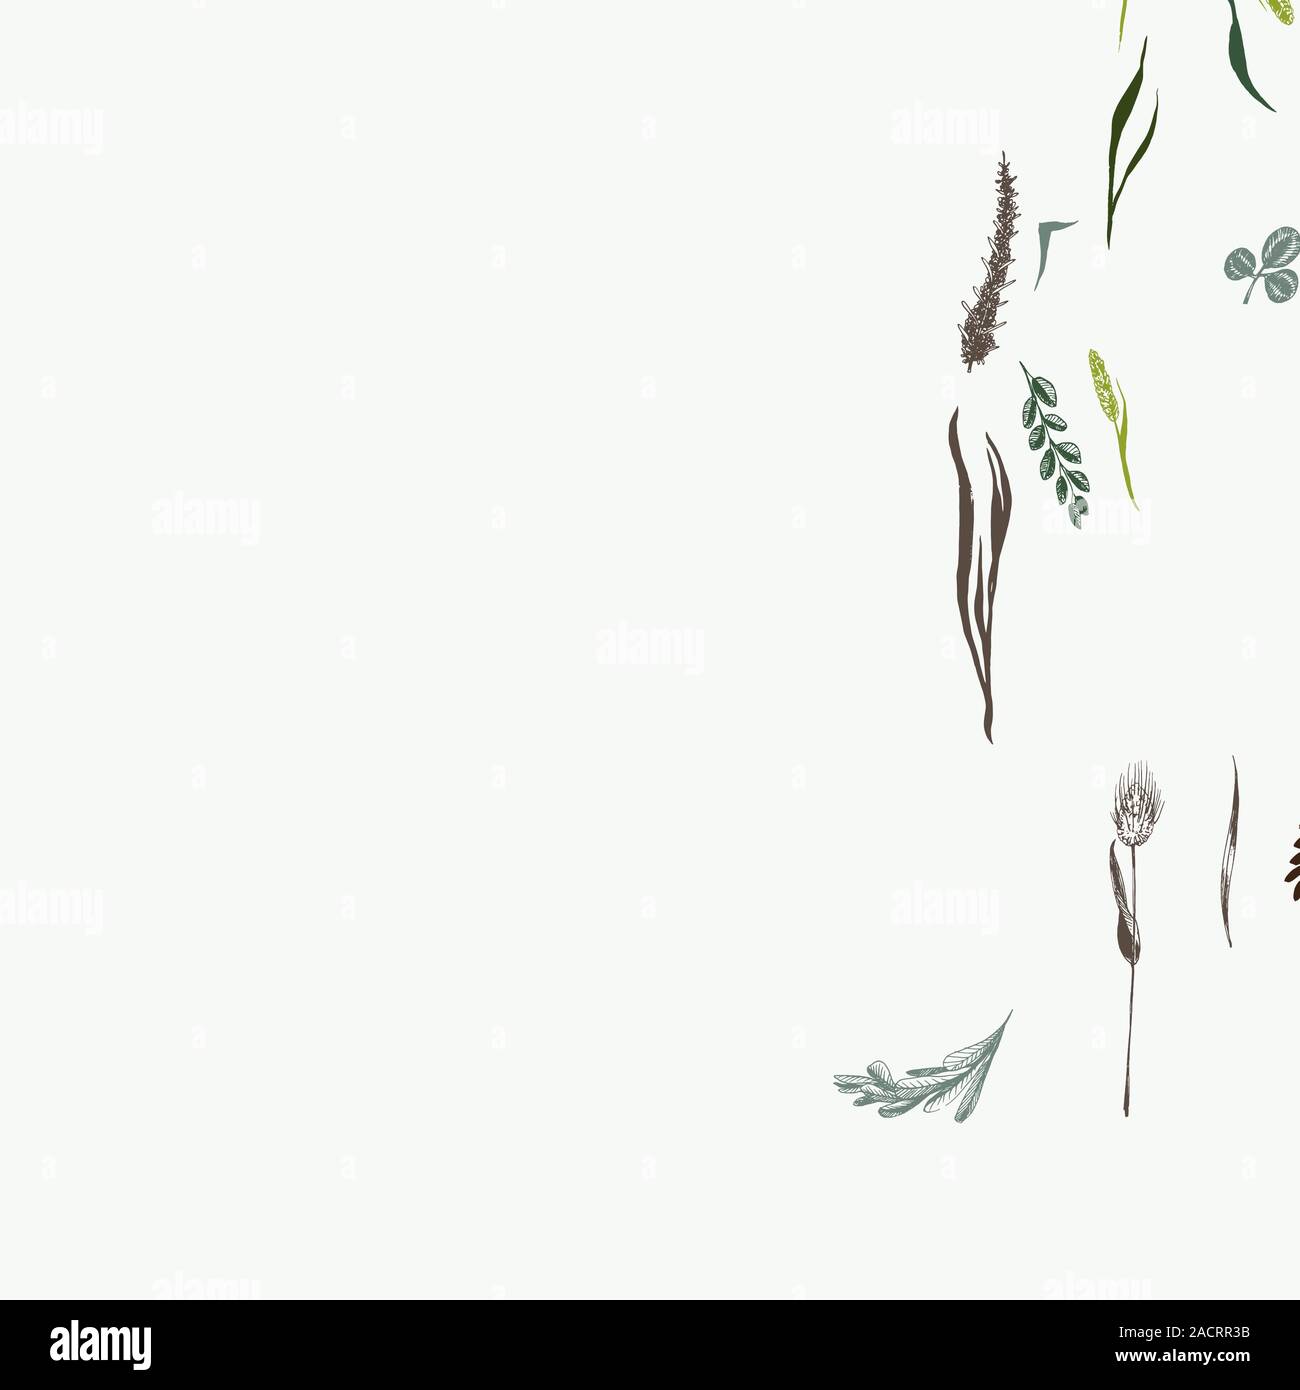 Hierbas silvestres y flores en seamless pattern en colores verdes sobre fondo claro. Campos de hierbas son en estilo de grabado Ilustración del Vector